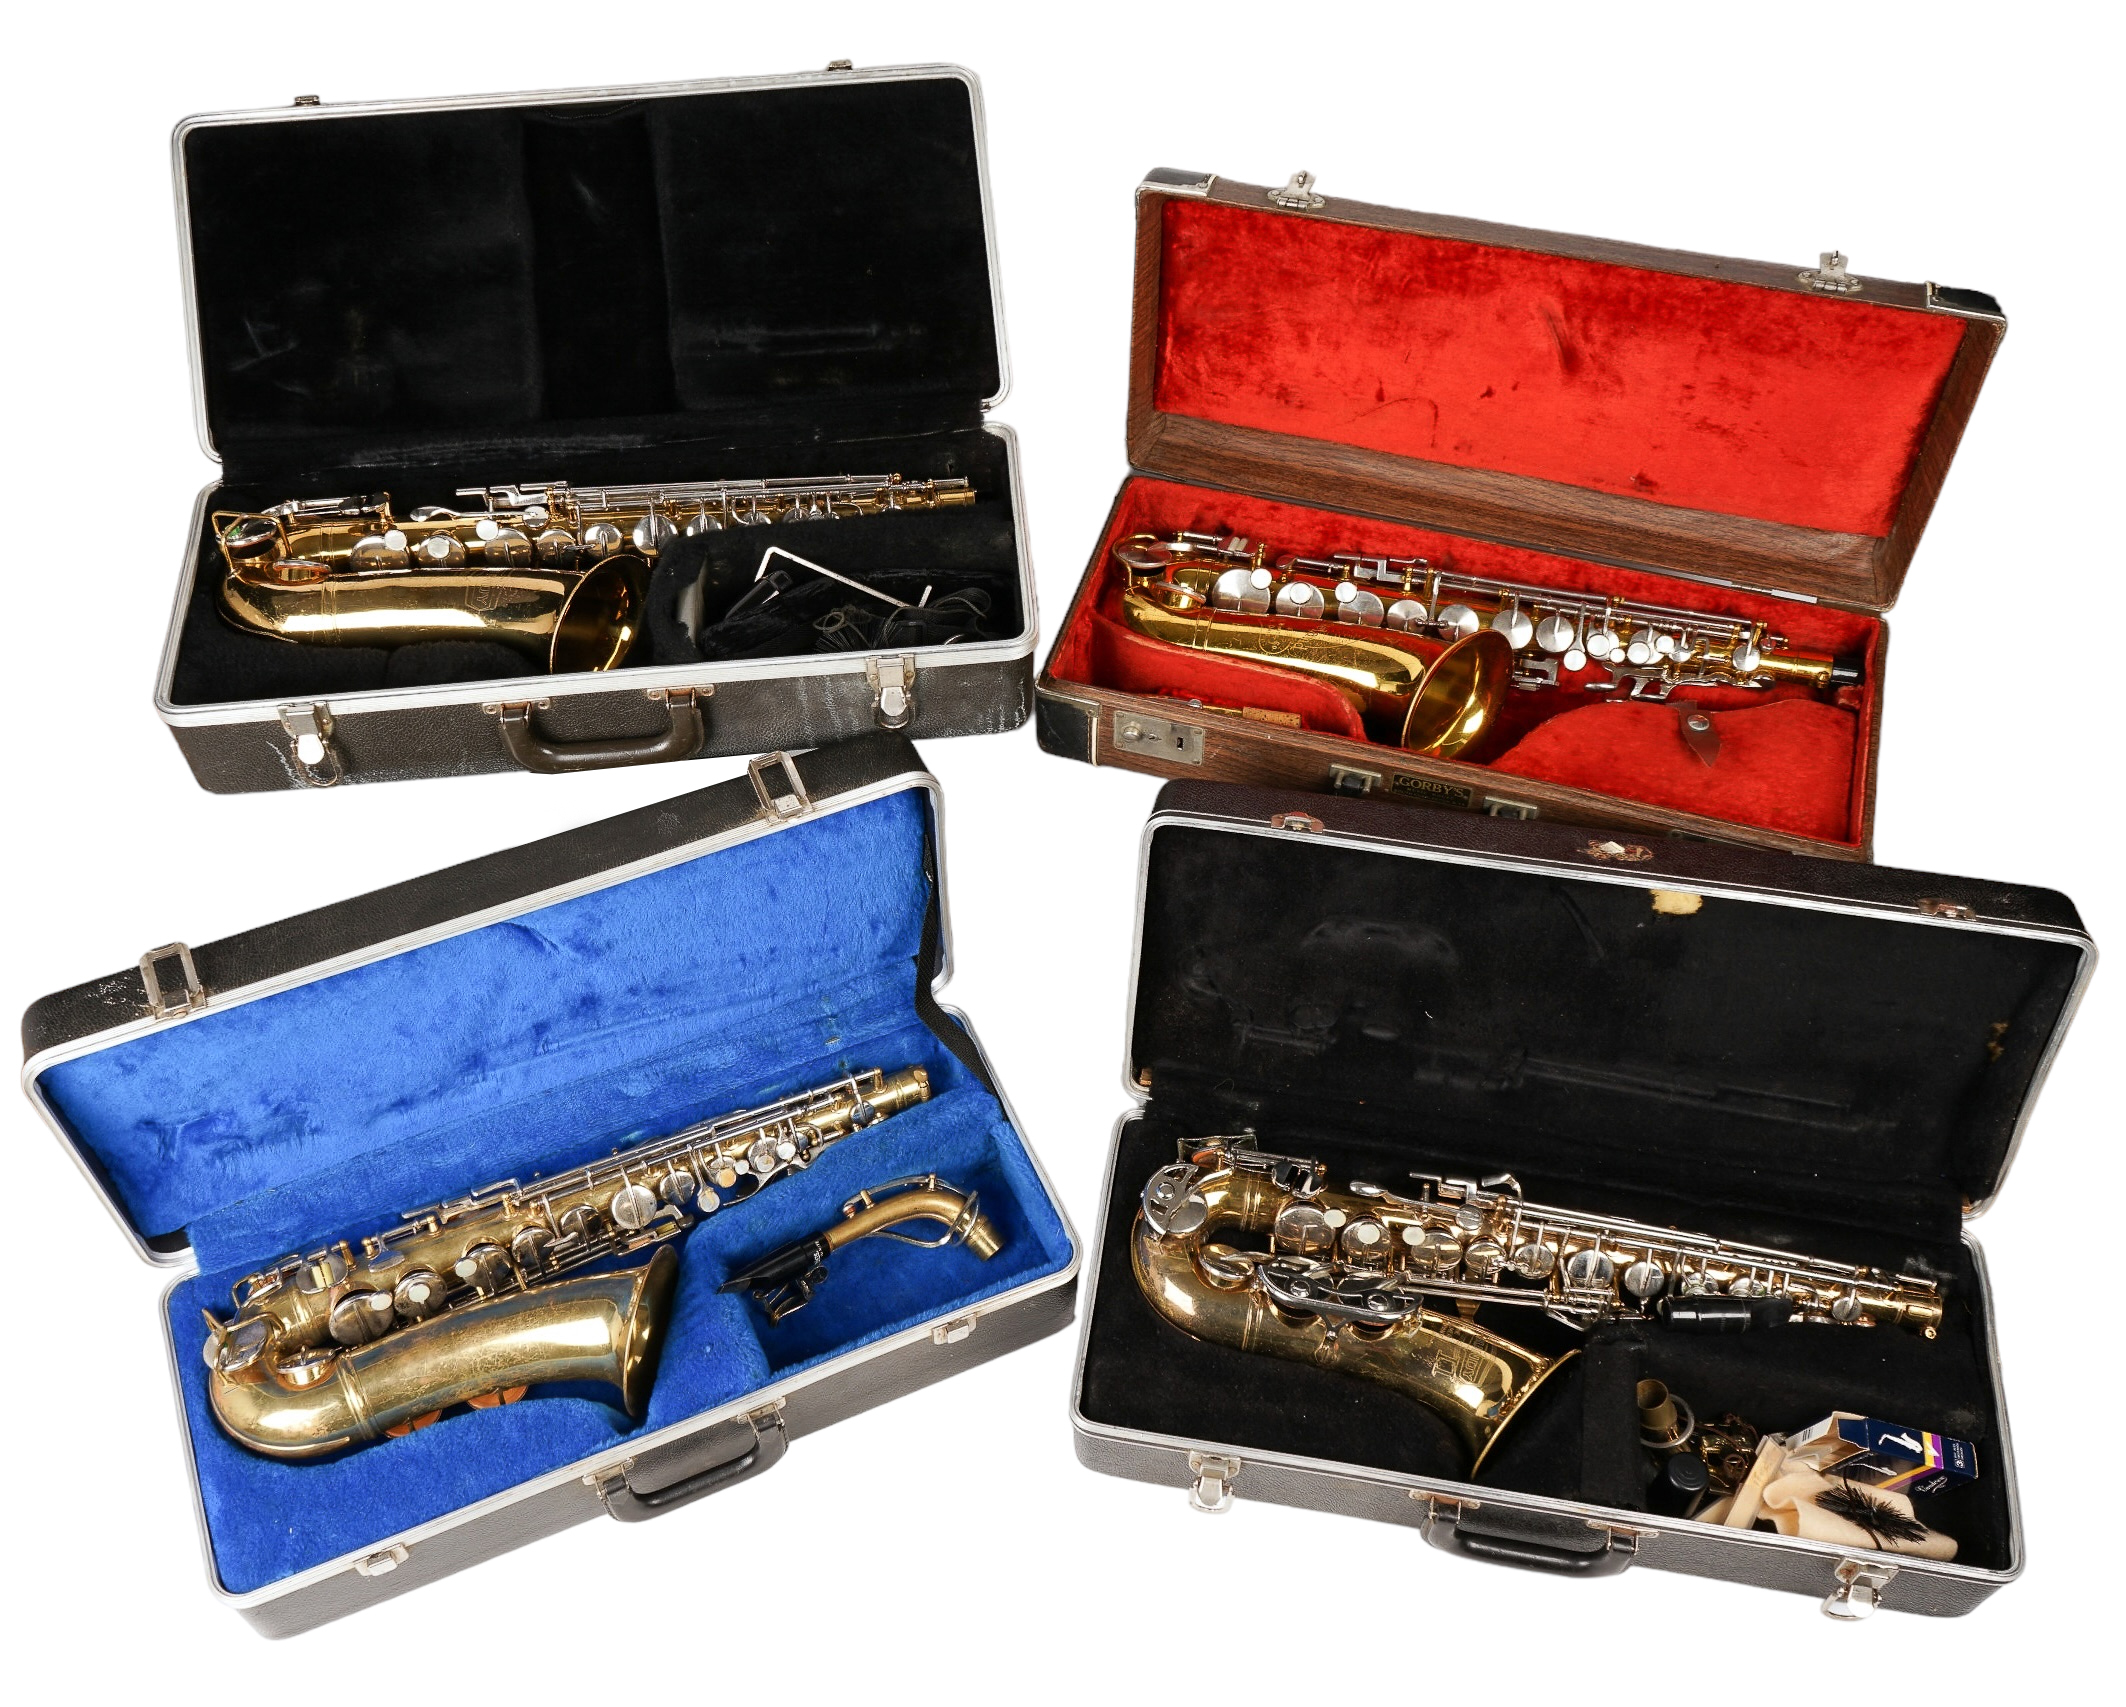  4 Alto saxophones c o Bundy 2e2298